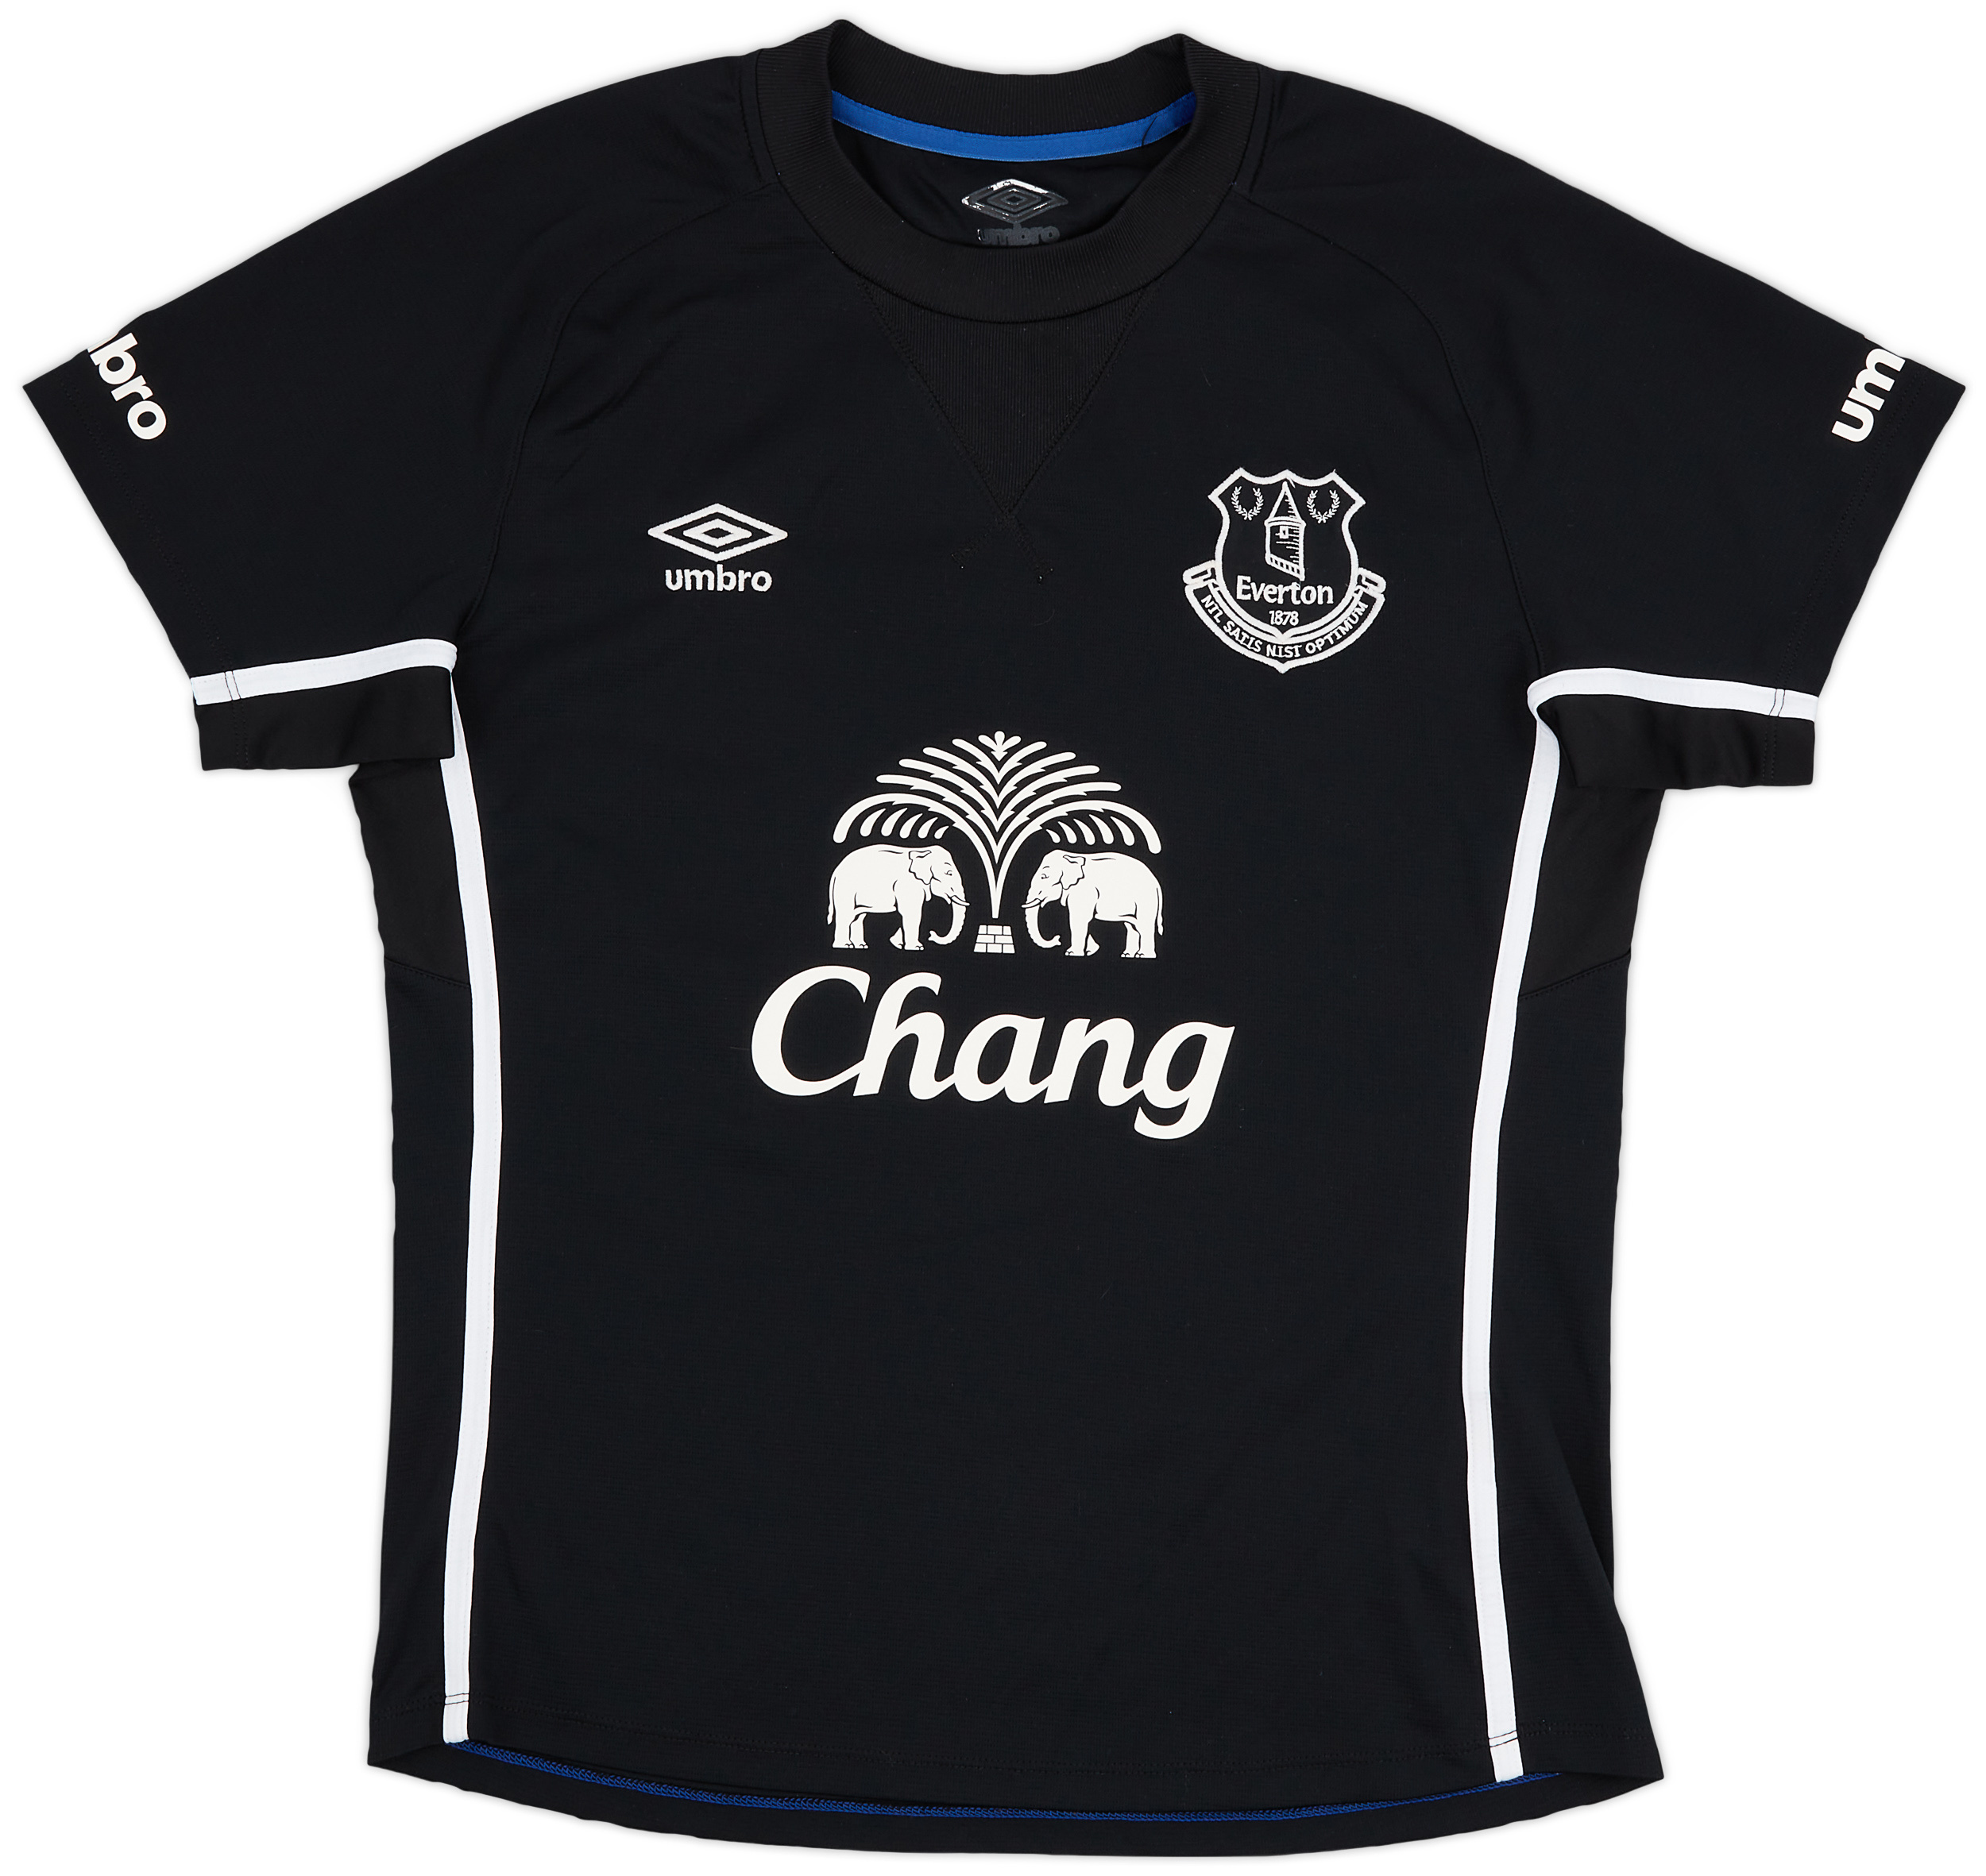 2014-15 Everton Away Shirt - 8/10 - ()